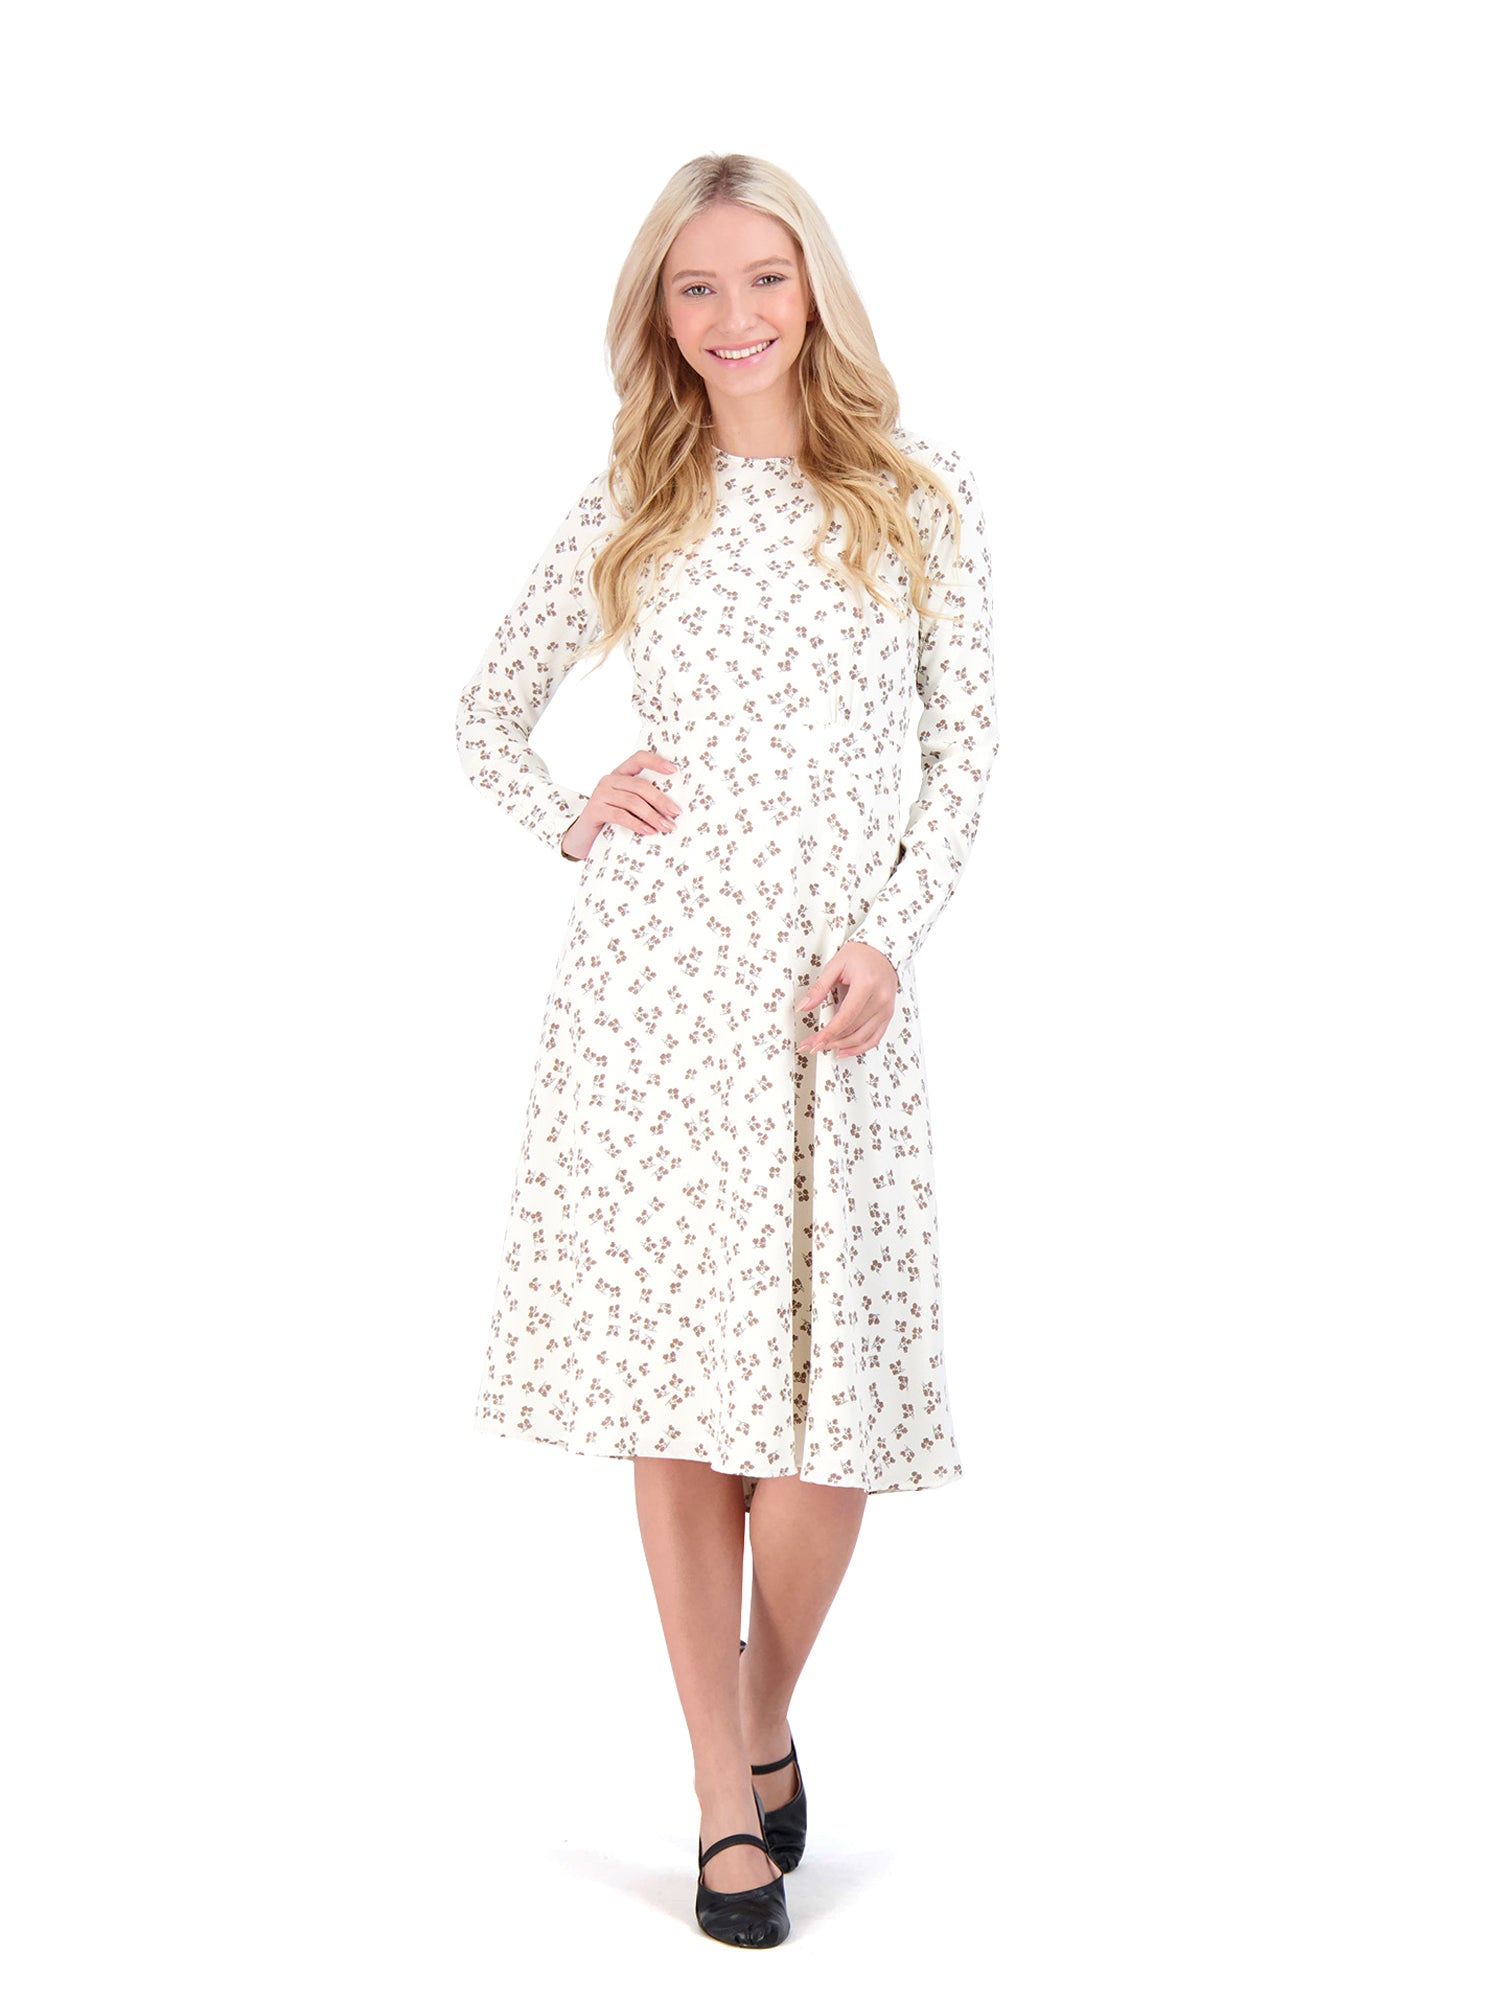 Ginger White Floral Print Dress - Dresses